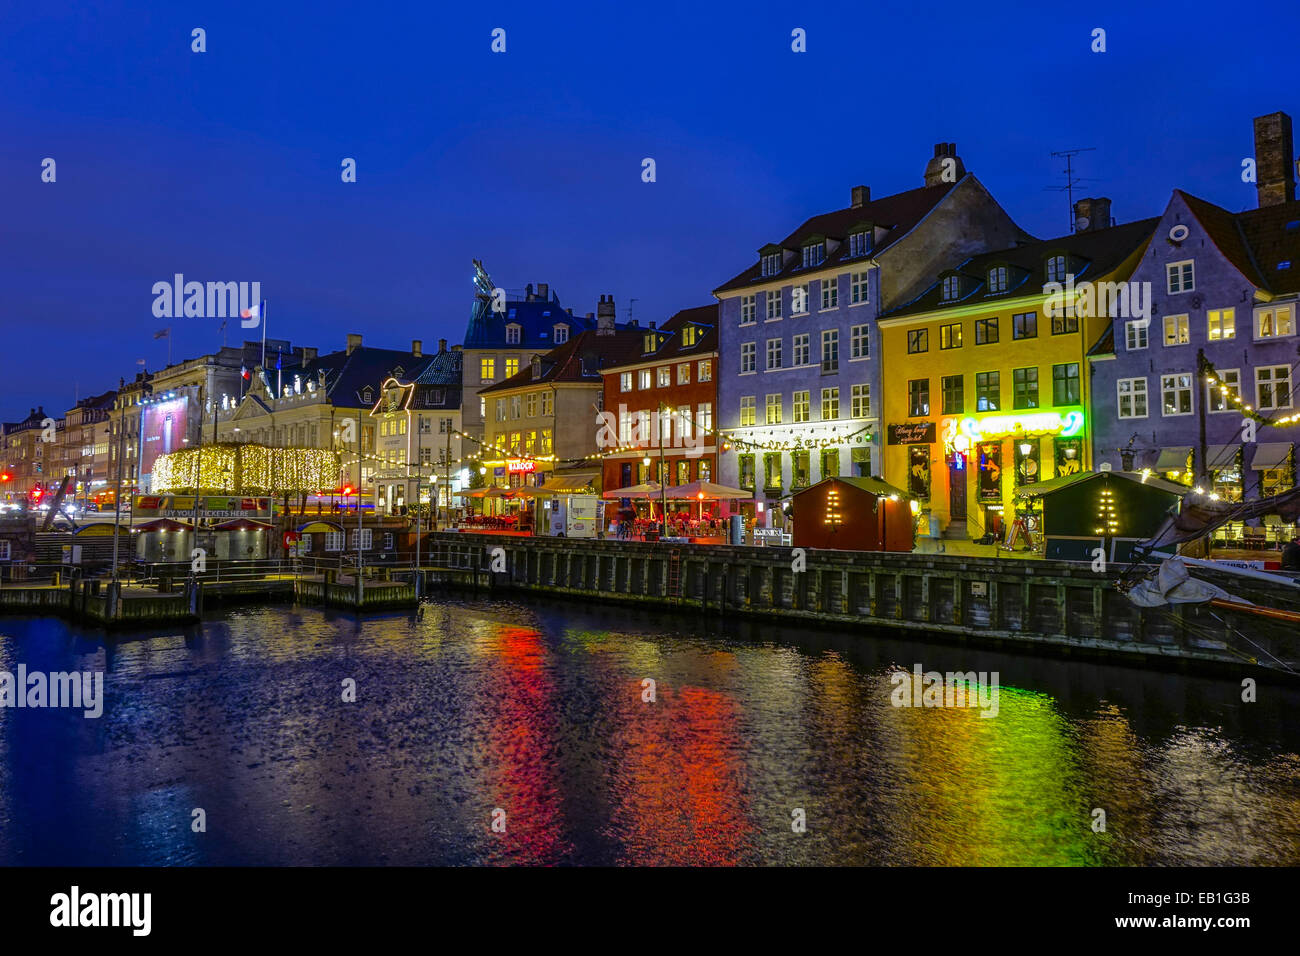 Weihnachtsmarkt am Nyhavn bei Nacht, Kopenhagen, Dänemark, Europa Foto Stock